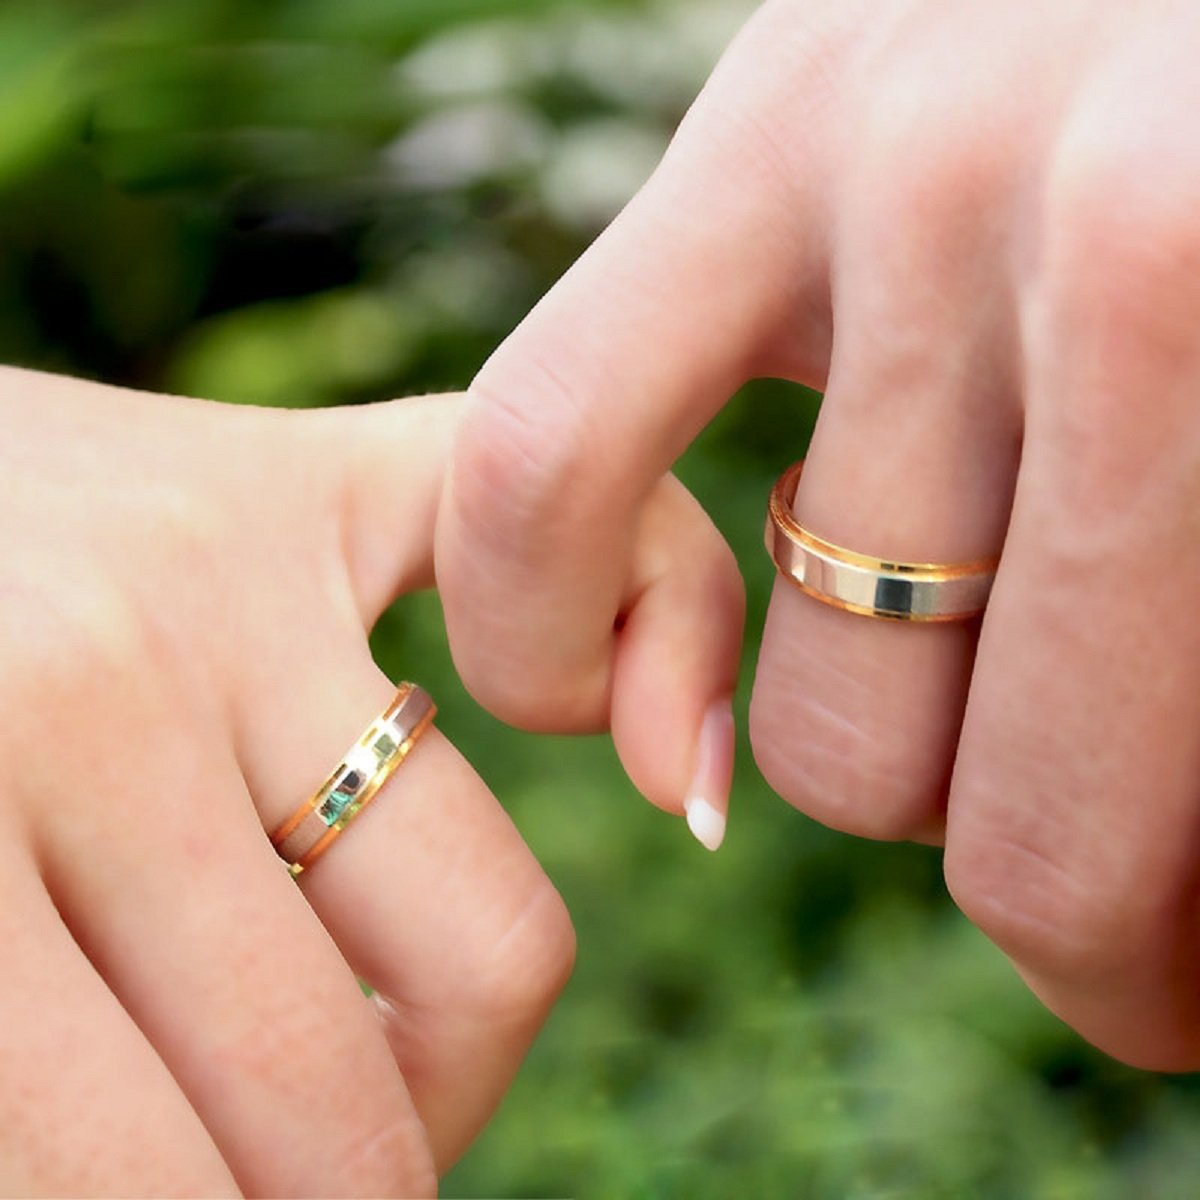 На какой руке носят армяне обручальное кольцо. Обручальные кольца на руках. Обручальные кольца наруказ. Пуки с обручальными кольцами. Кольцо на руке.